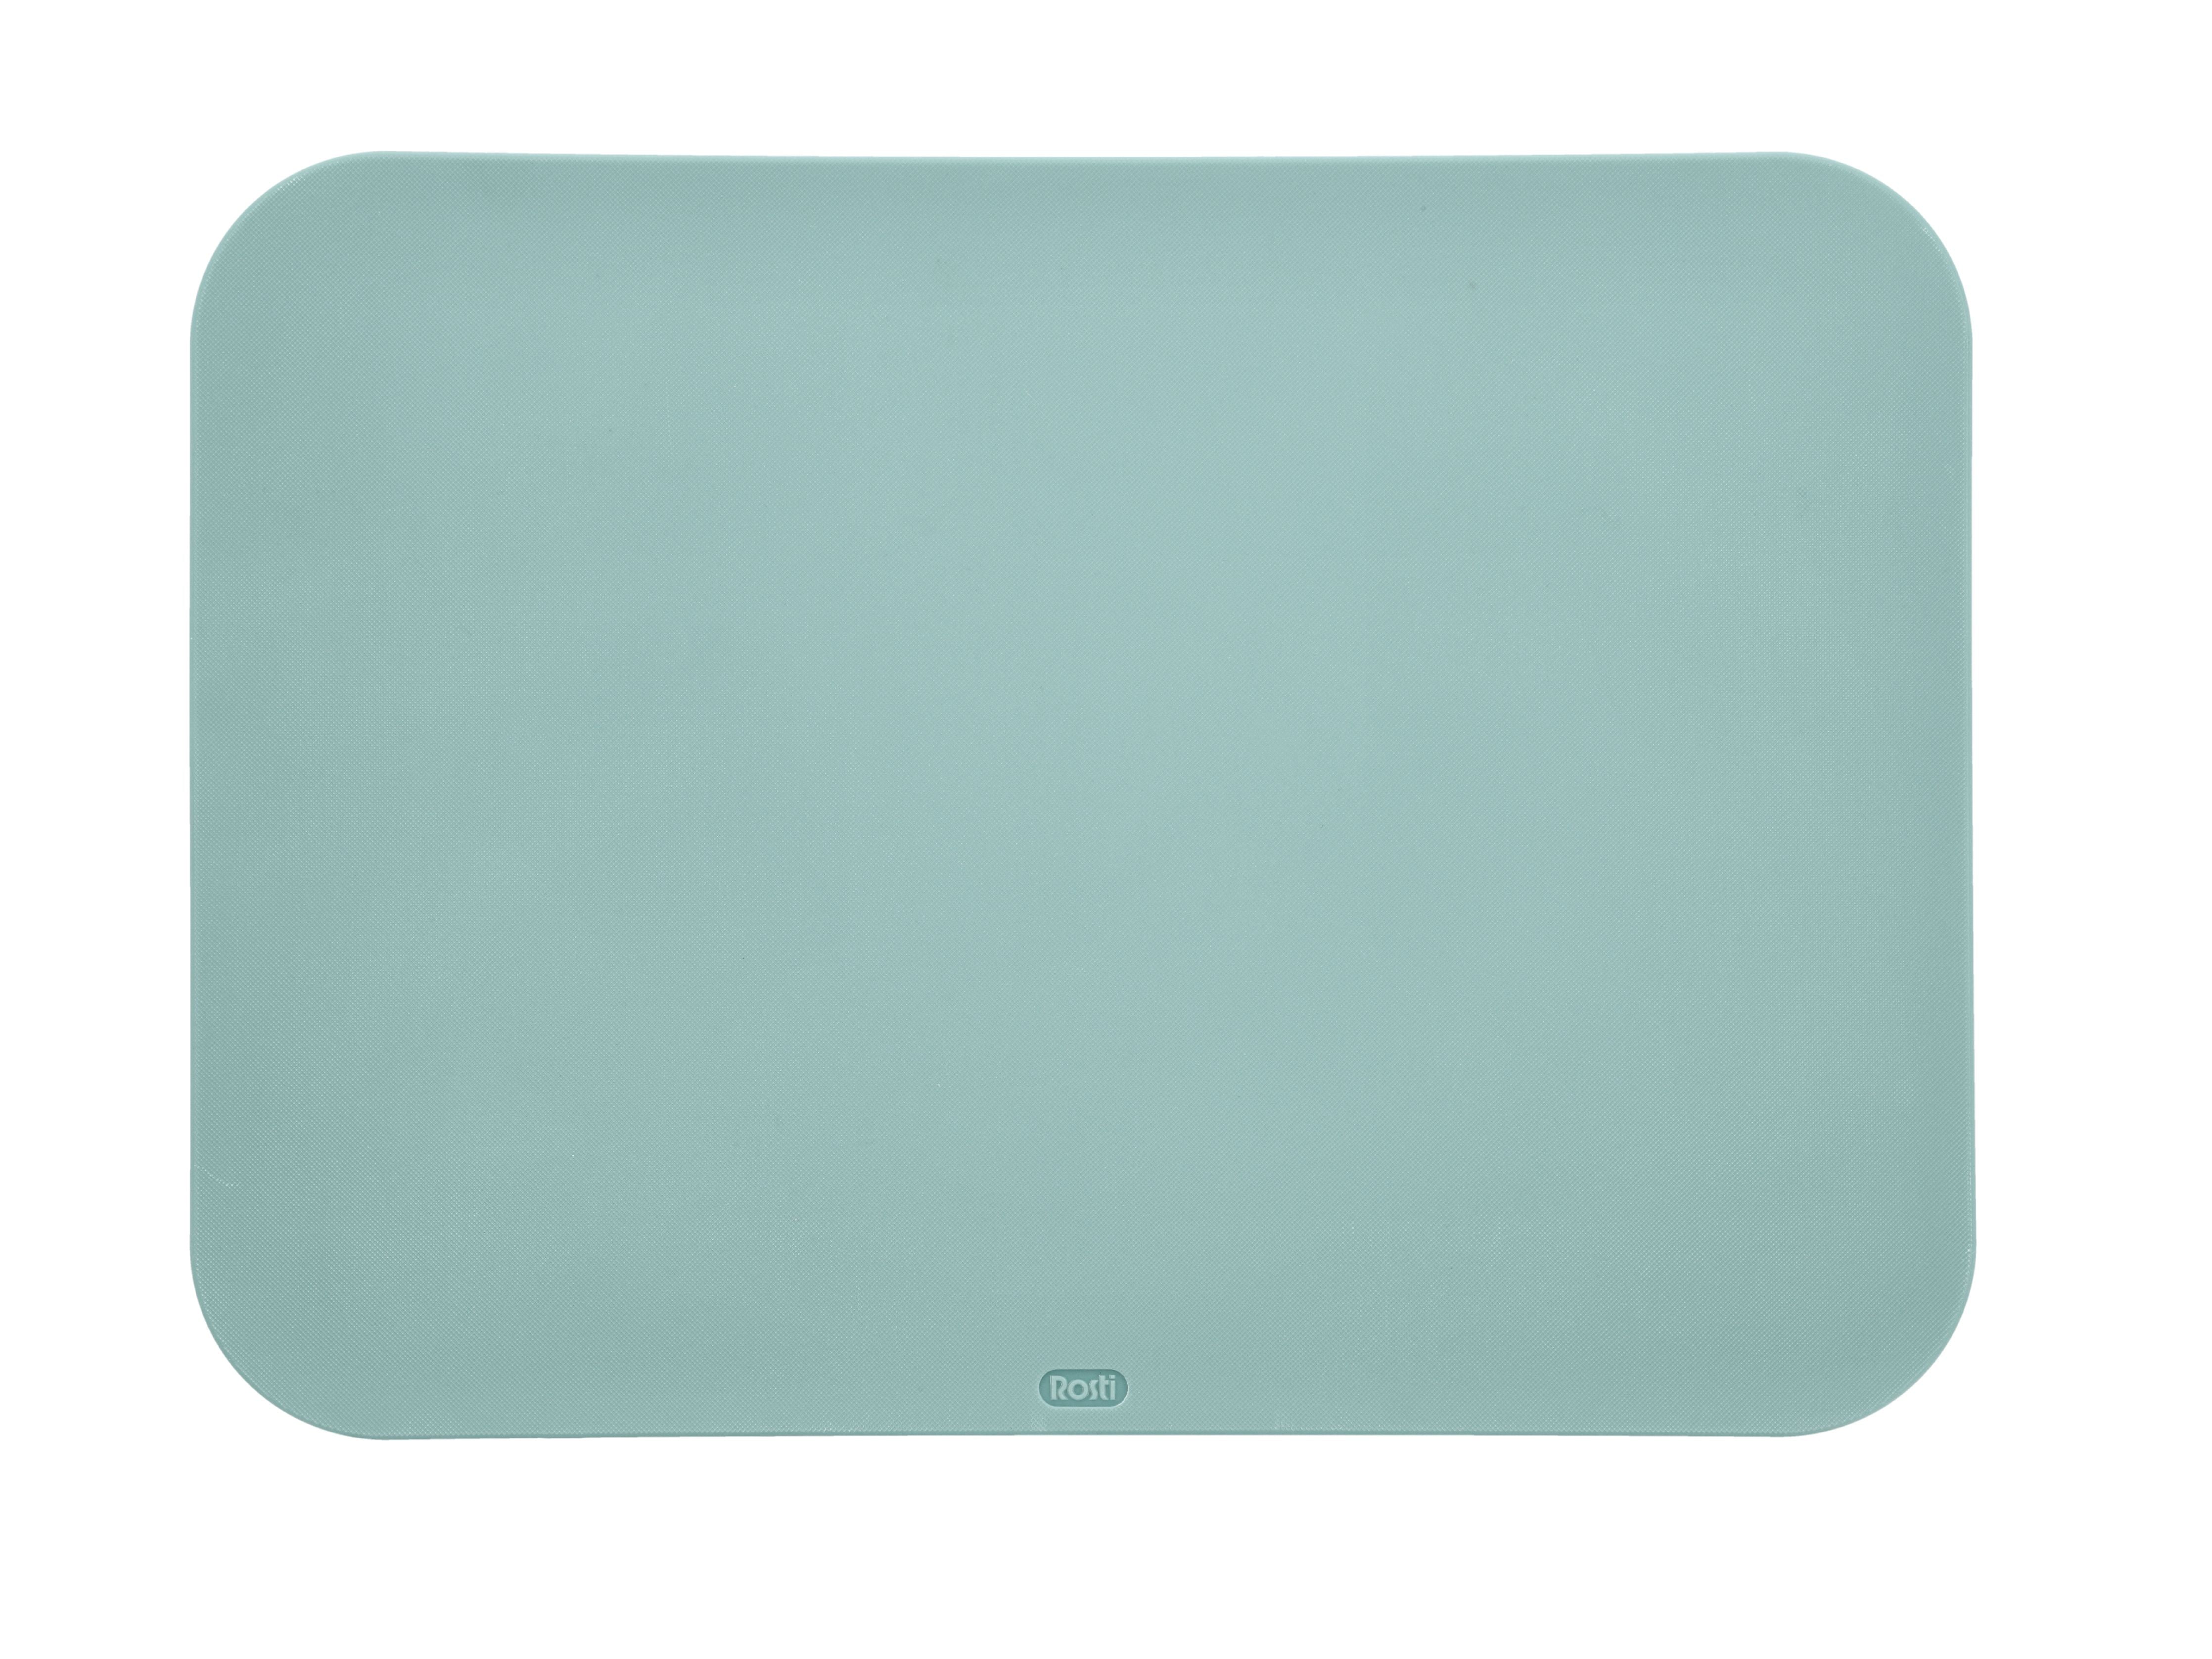 Rosti Choptima Board Board 35,5x25,5 cm, vert nordique